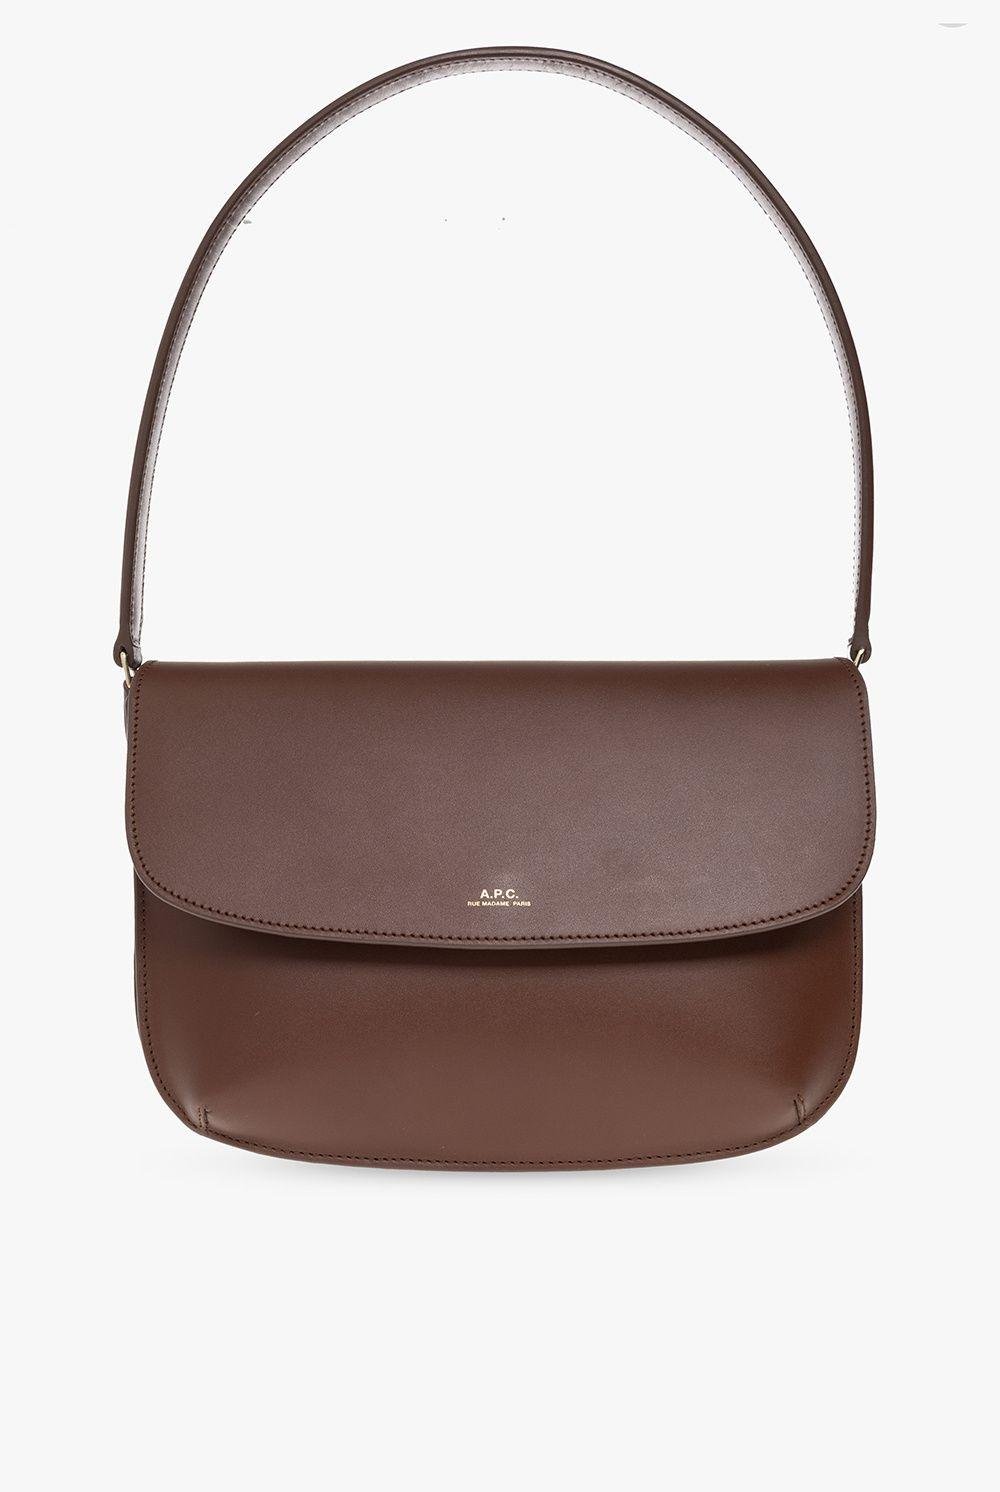 A.P.C. 'sarah' Shoulder Bag in Brown | Lyst